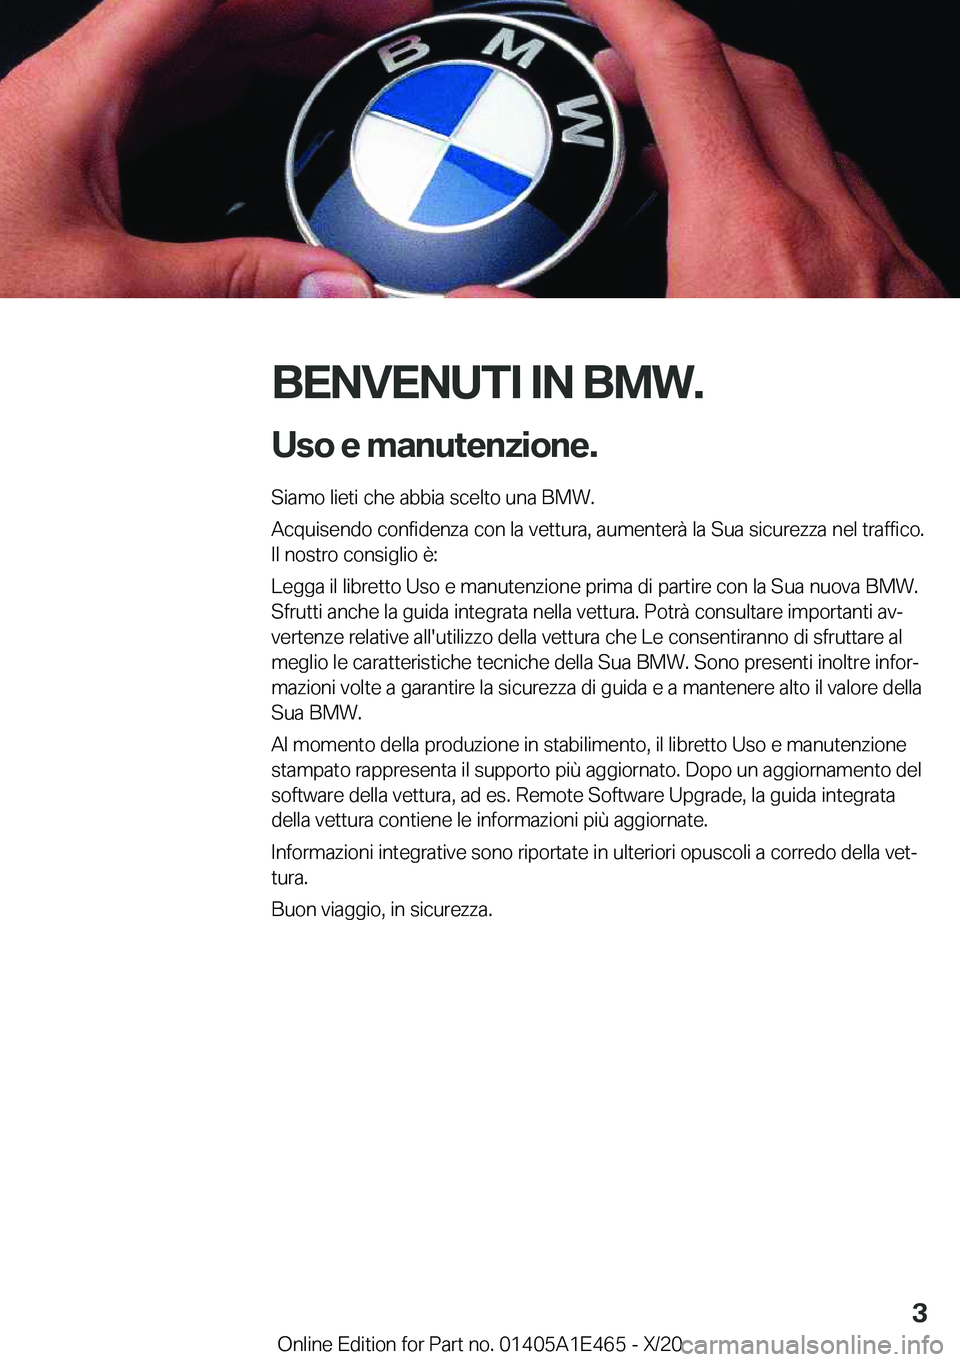 BMW M3 2021  Libretti Di Uso E manutenzione (in Italian) �B�E�N�V�E�N�U�T�I��I�N��B�M�W�.�U�s�o��e��m�a�n�u�t�e�n�z�i�o�n�e�.
�S�i�a�m�o��l�i�e�t�i��c�h�e��a�b�b�i�a��s�c�e�l�t�o��u�n�a��B�M�W�.
�A�c�q�u�i�s�e�n�d�o��c�o�n�f�i�d�e�n�z�a��c�o�n�